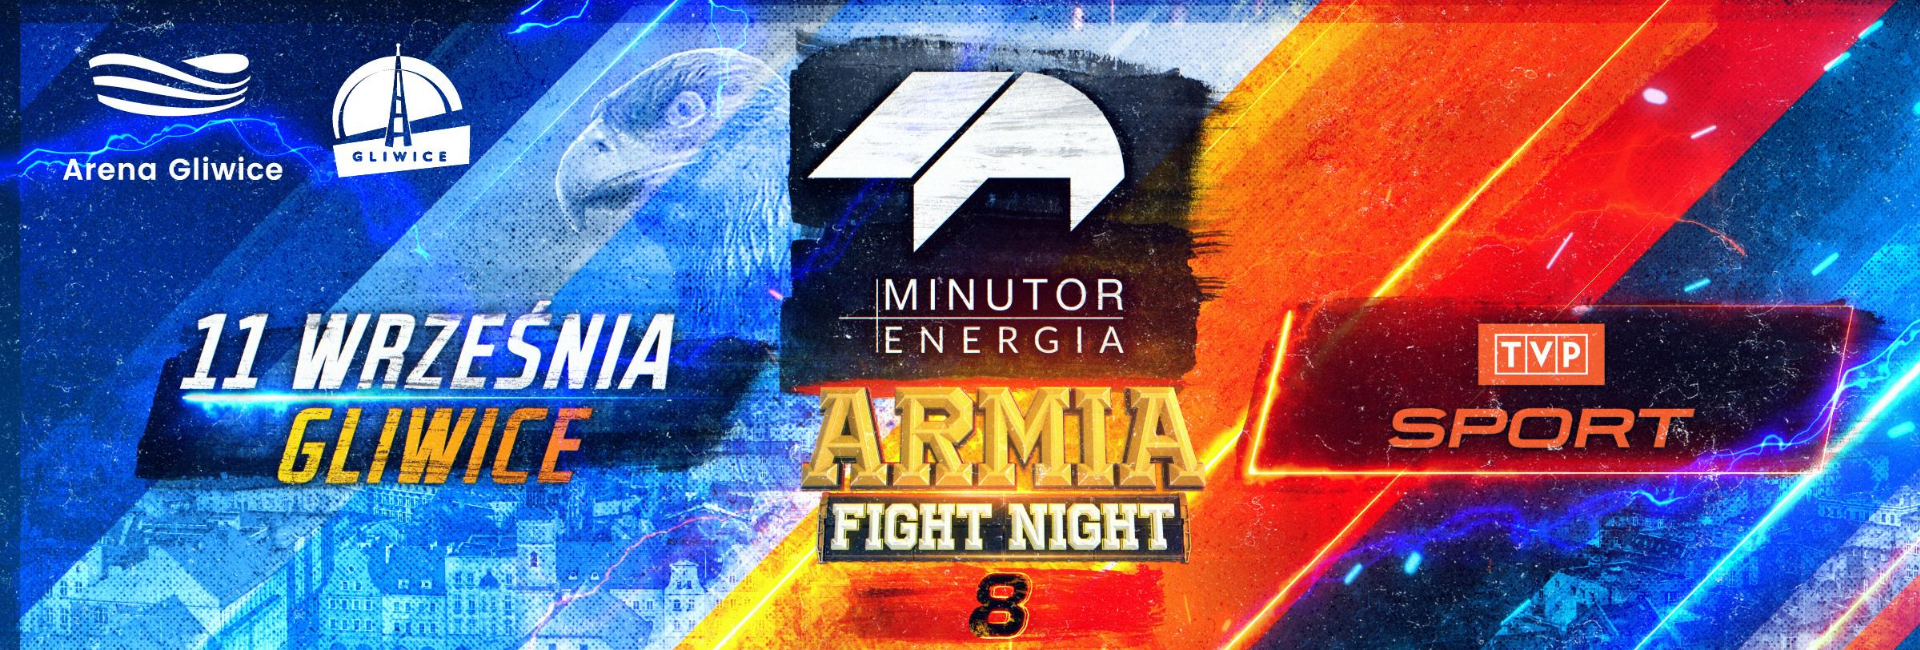 Minutor Energia Armia Fight Night 8